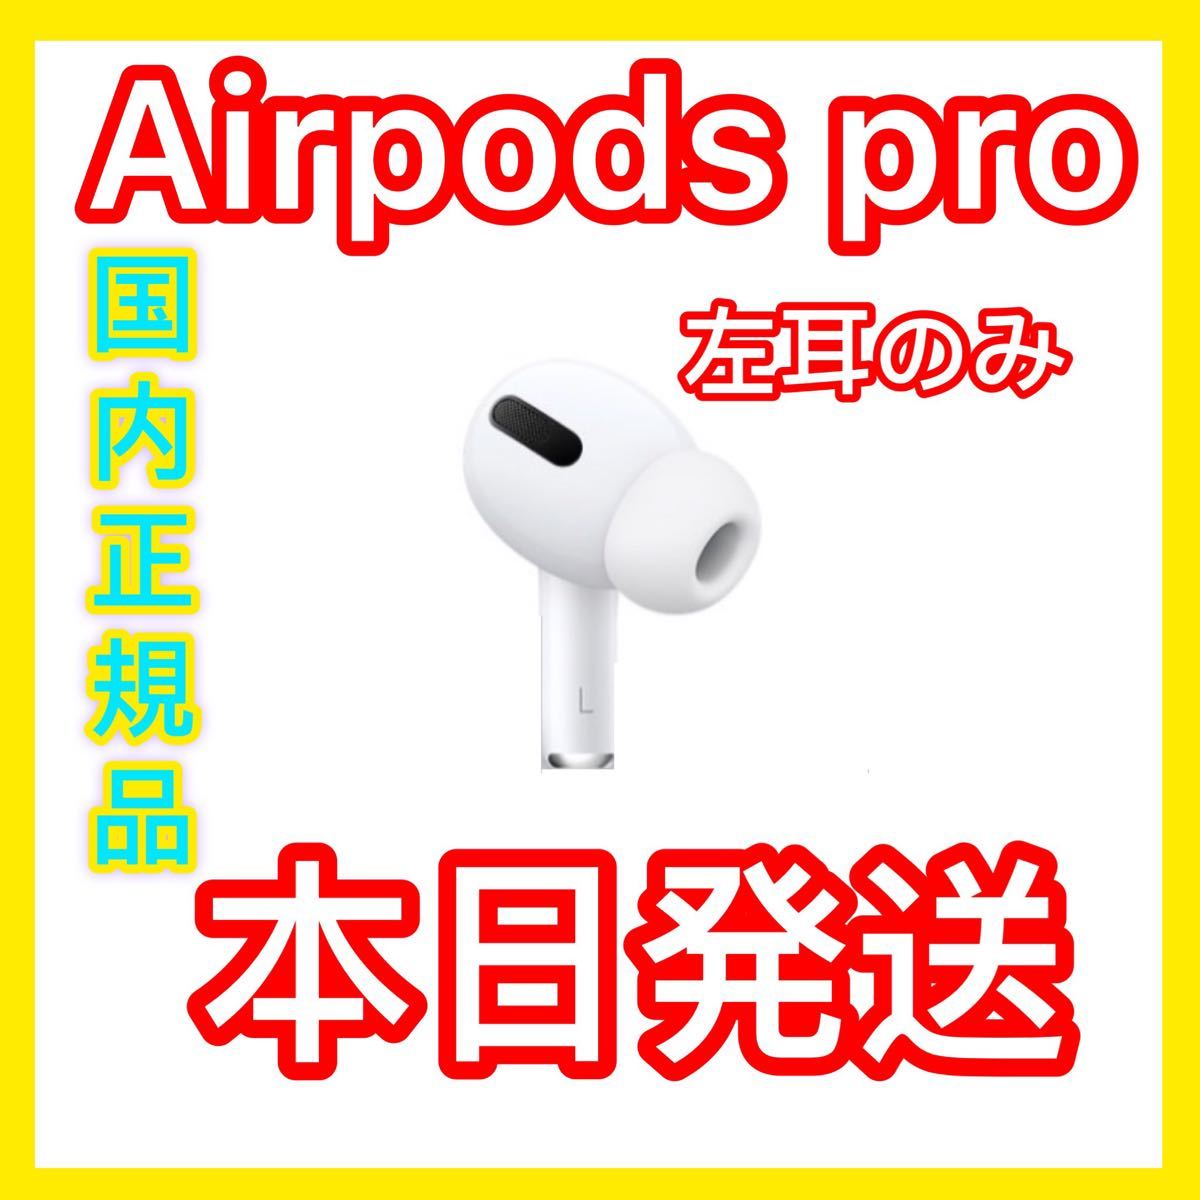 エアーポッズ プロ AirPods pro 左耳のみ 片耳L Apple正規品 AirPods 